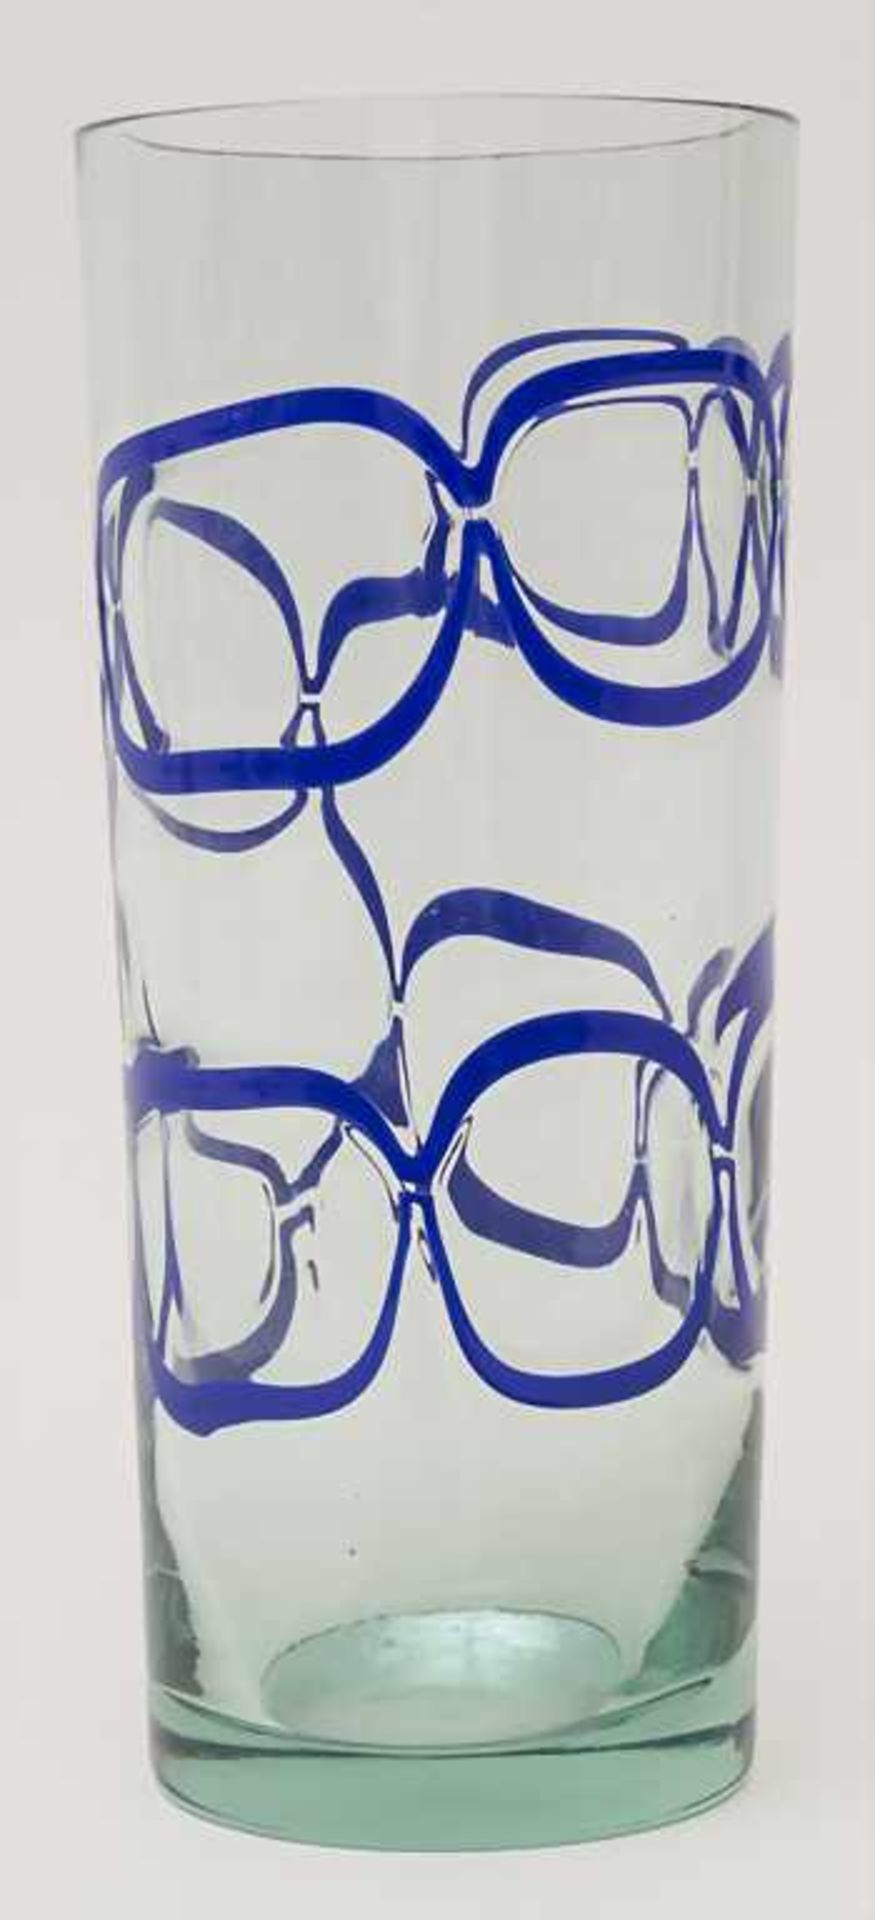 Vase / A vase, wohl Barovier und Toso, Murano, 60/70 er JahreMaterial: grünliches Glas, mit zwei